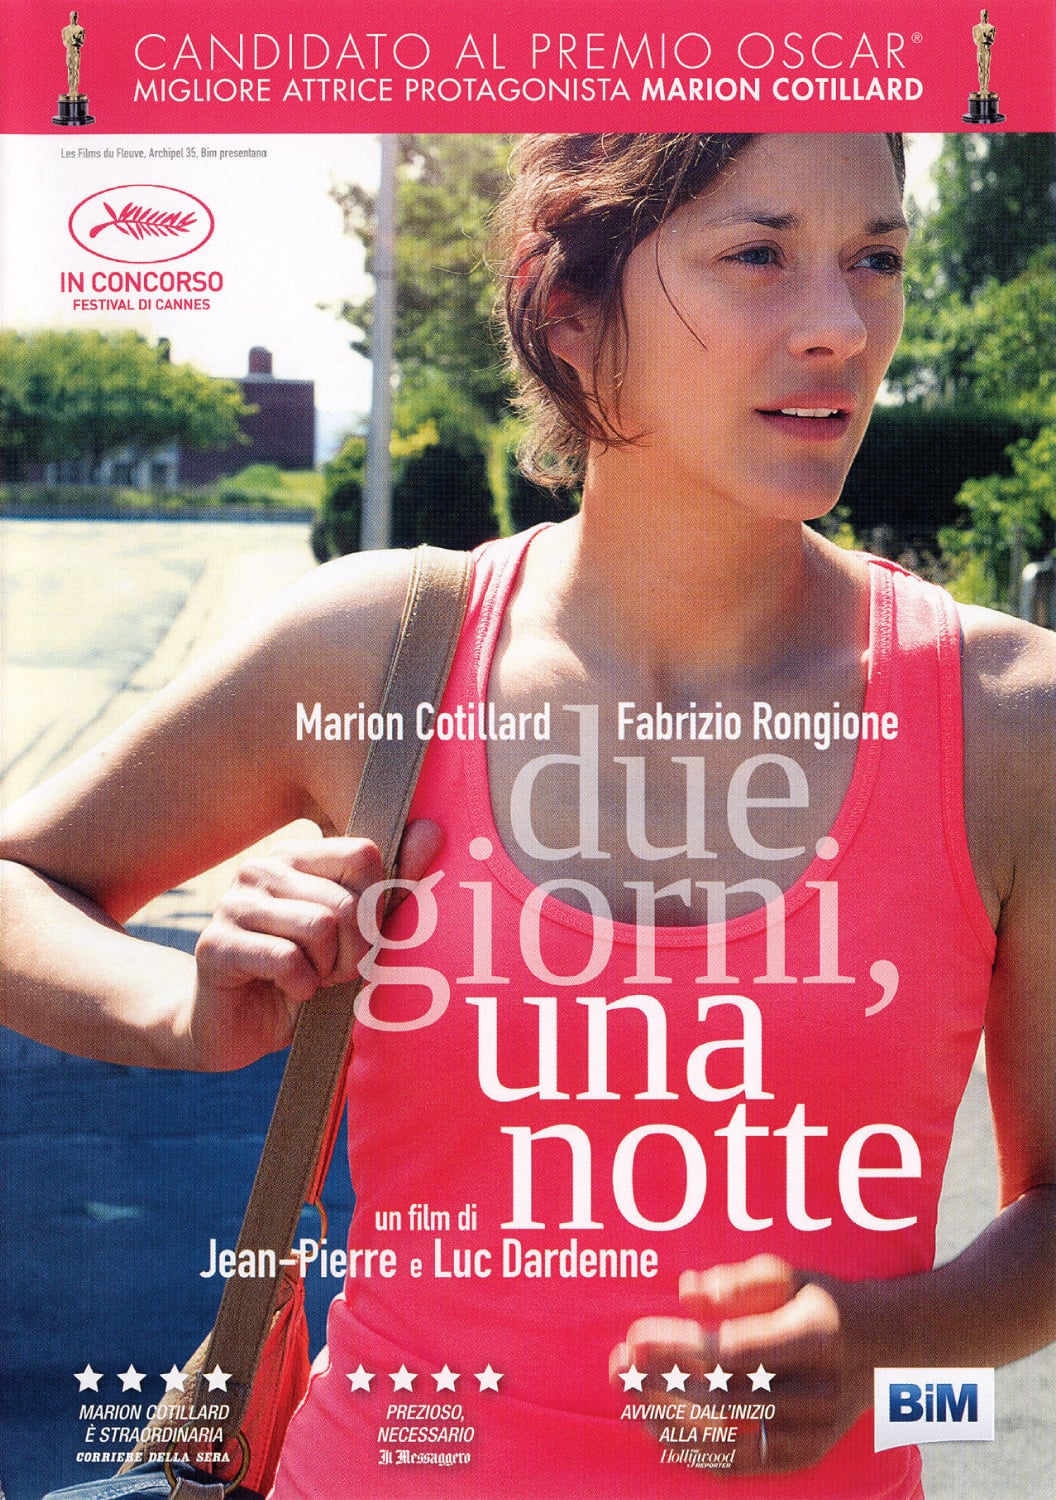 Poster for the movie "Due giorni, una notte"